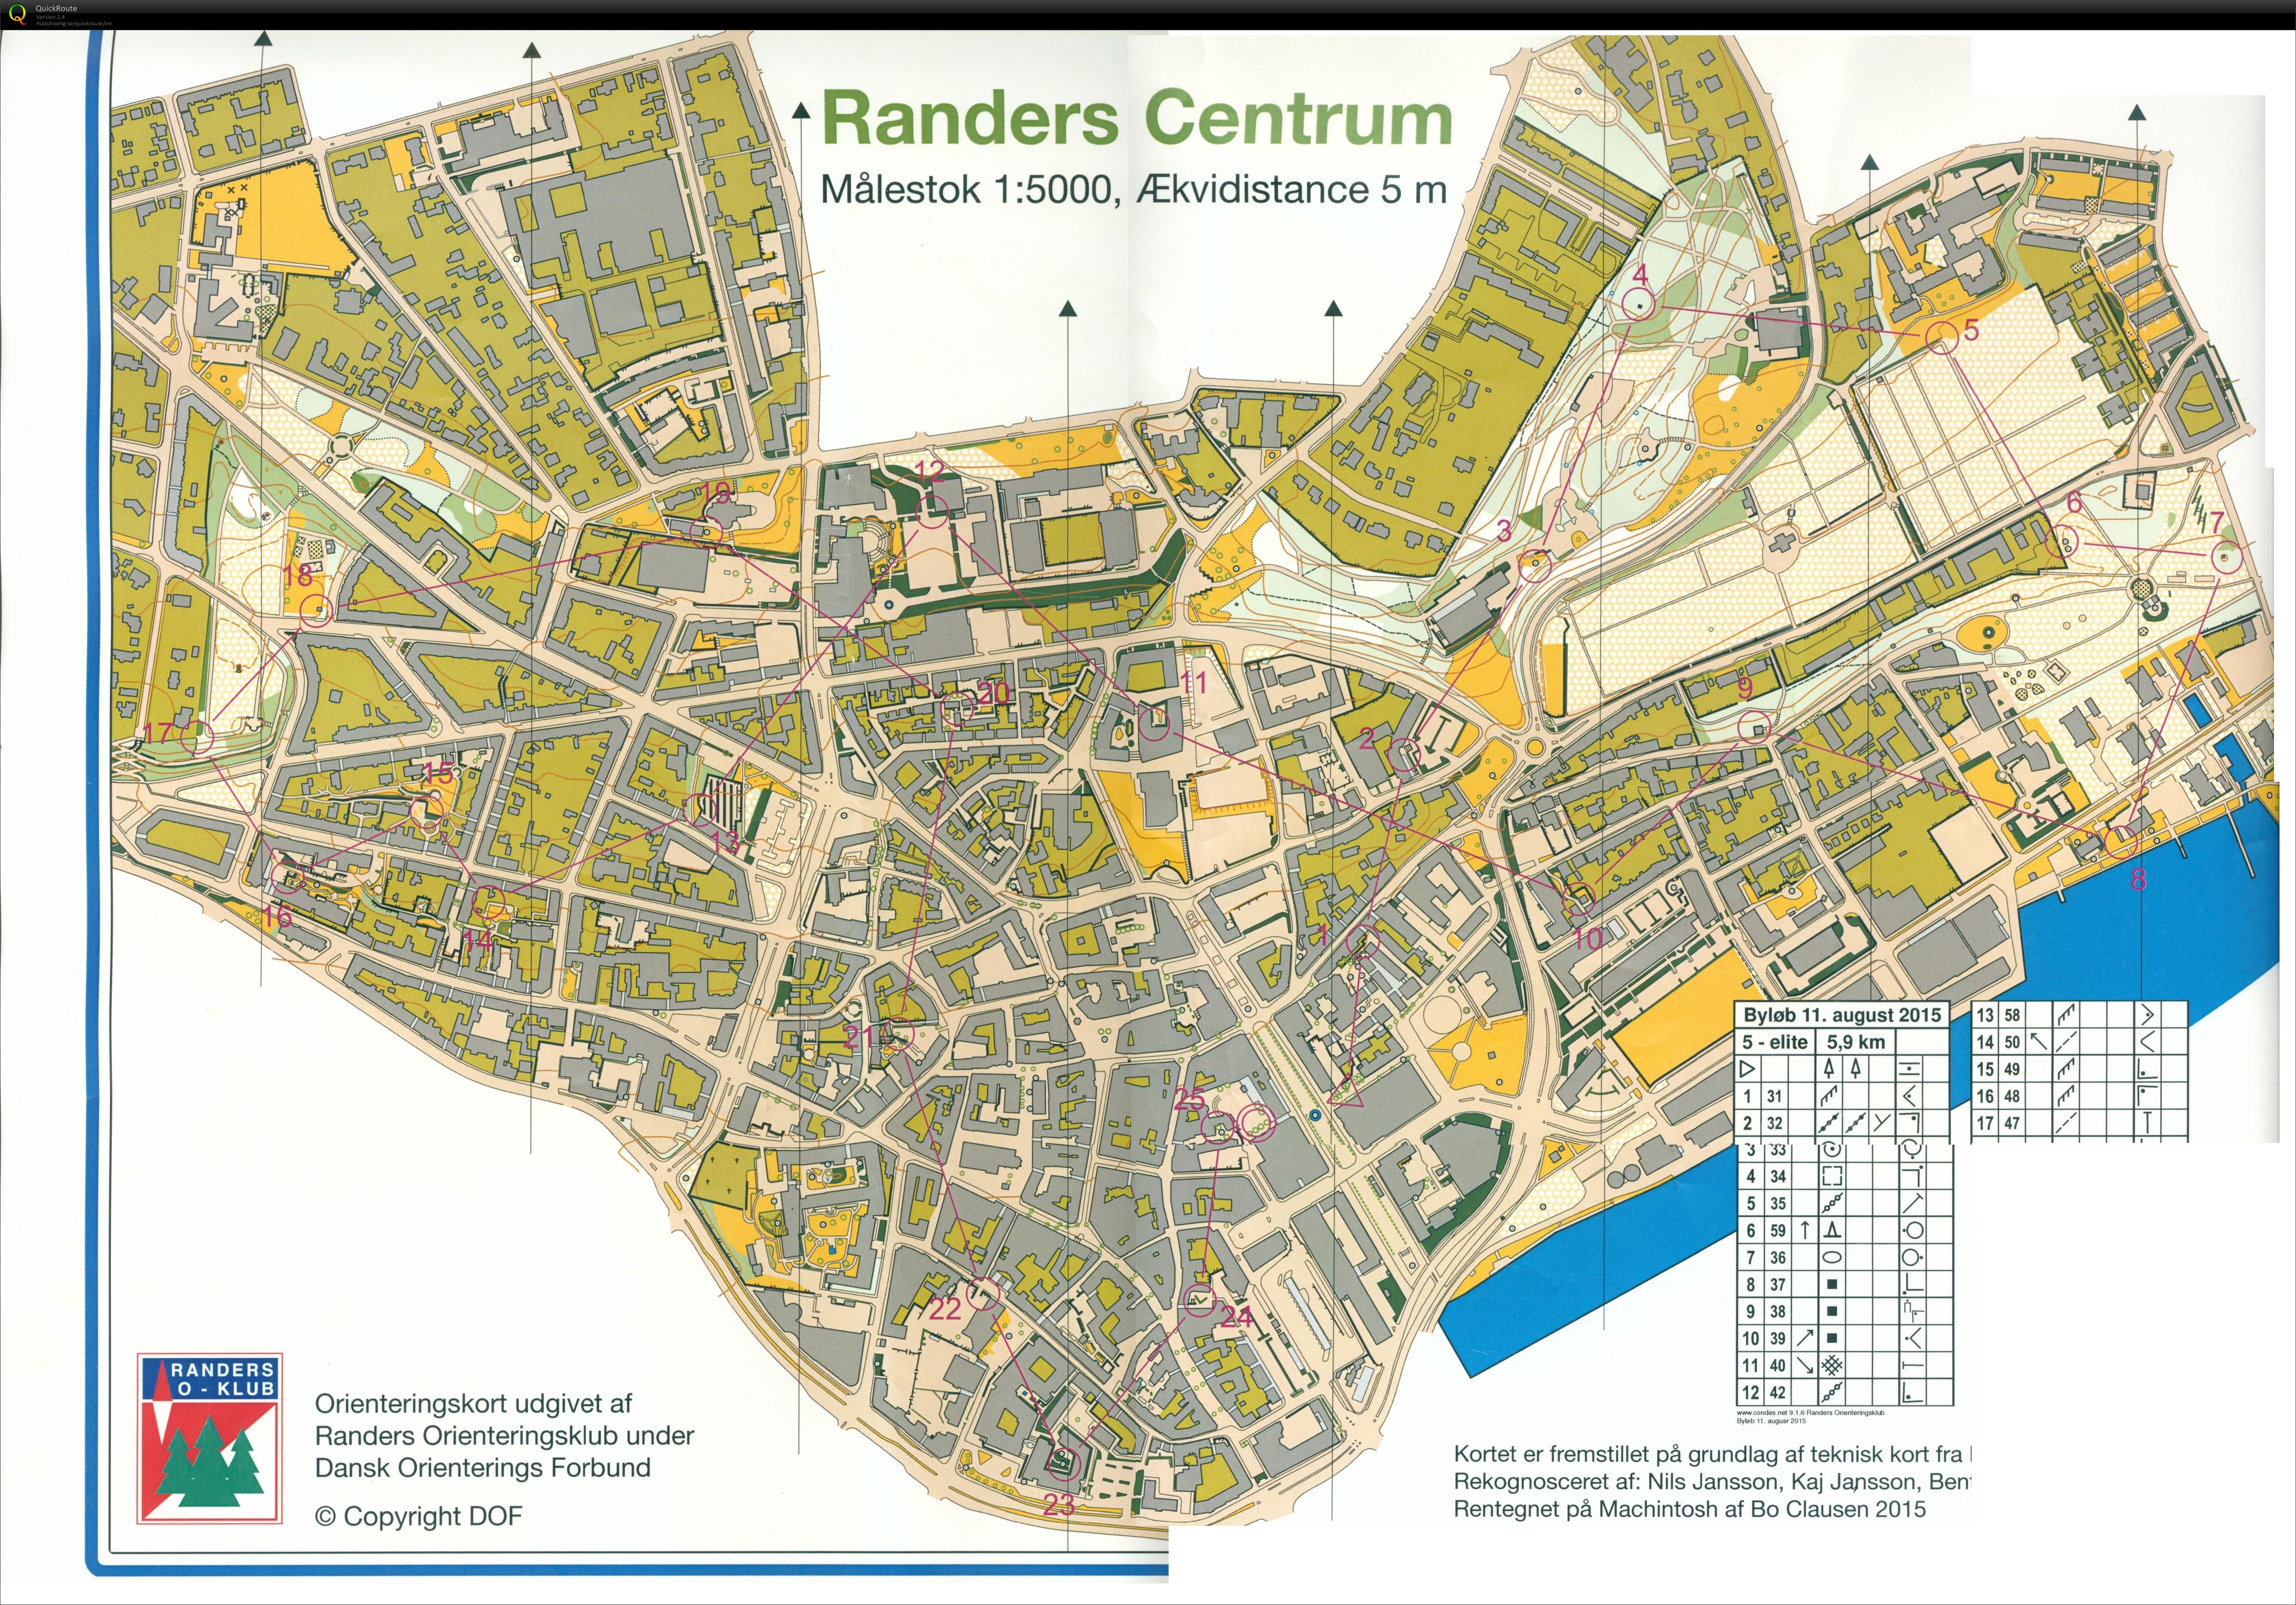 Randers by, Bane 5, Keld Gade (2015-08-11)